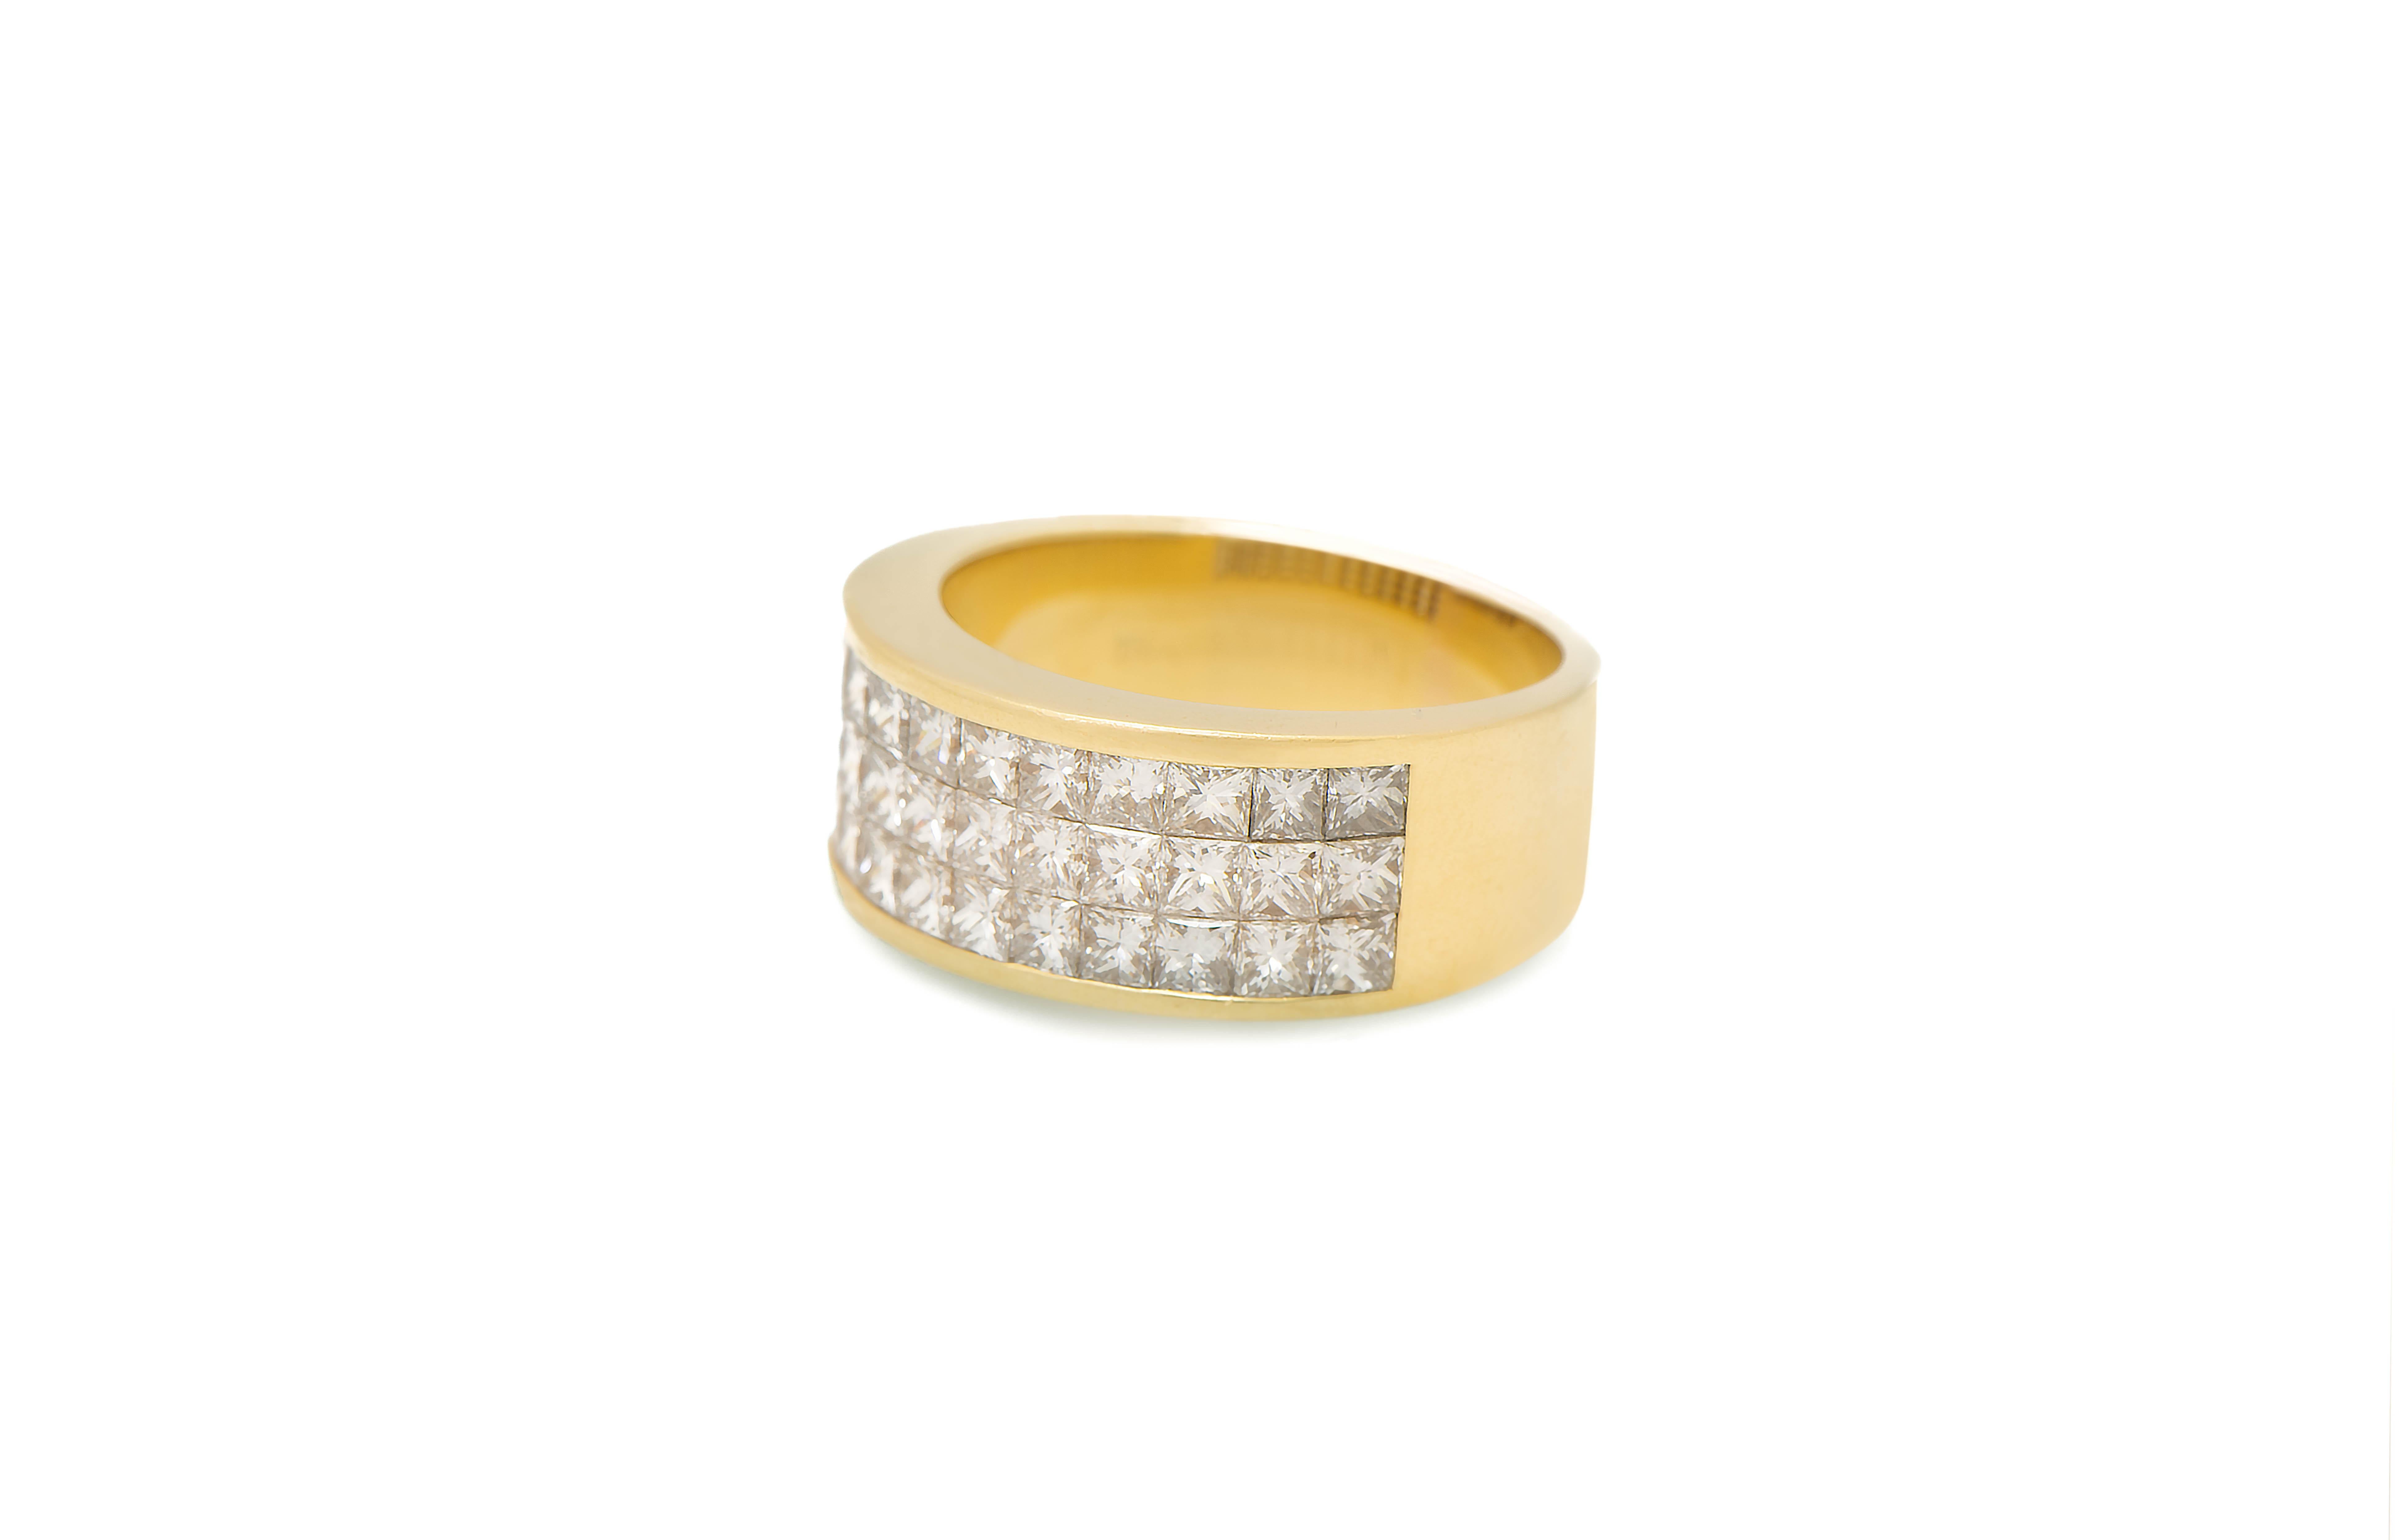 Dreireihiger Herren-Diamantring aus 18K Gelbgold

Gewicht der Diamanten: Ca. 2.00 Karat

Ringgröße: 11
Kostenfrei anpassbar